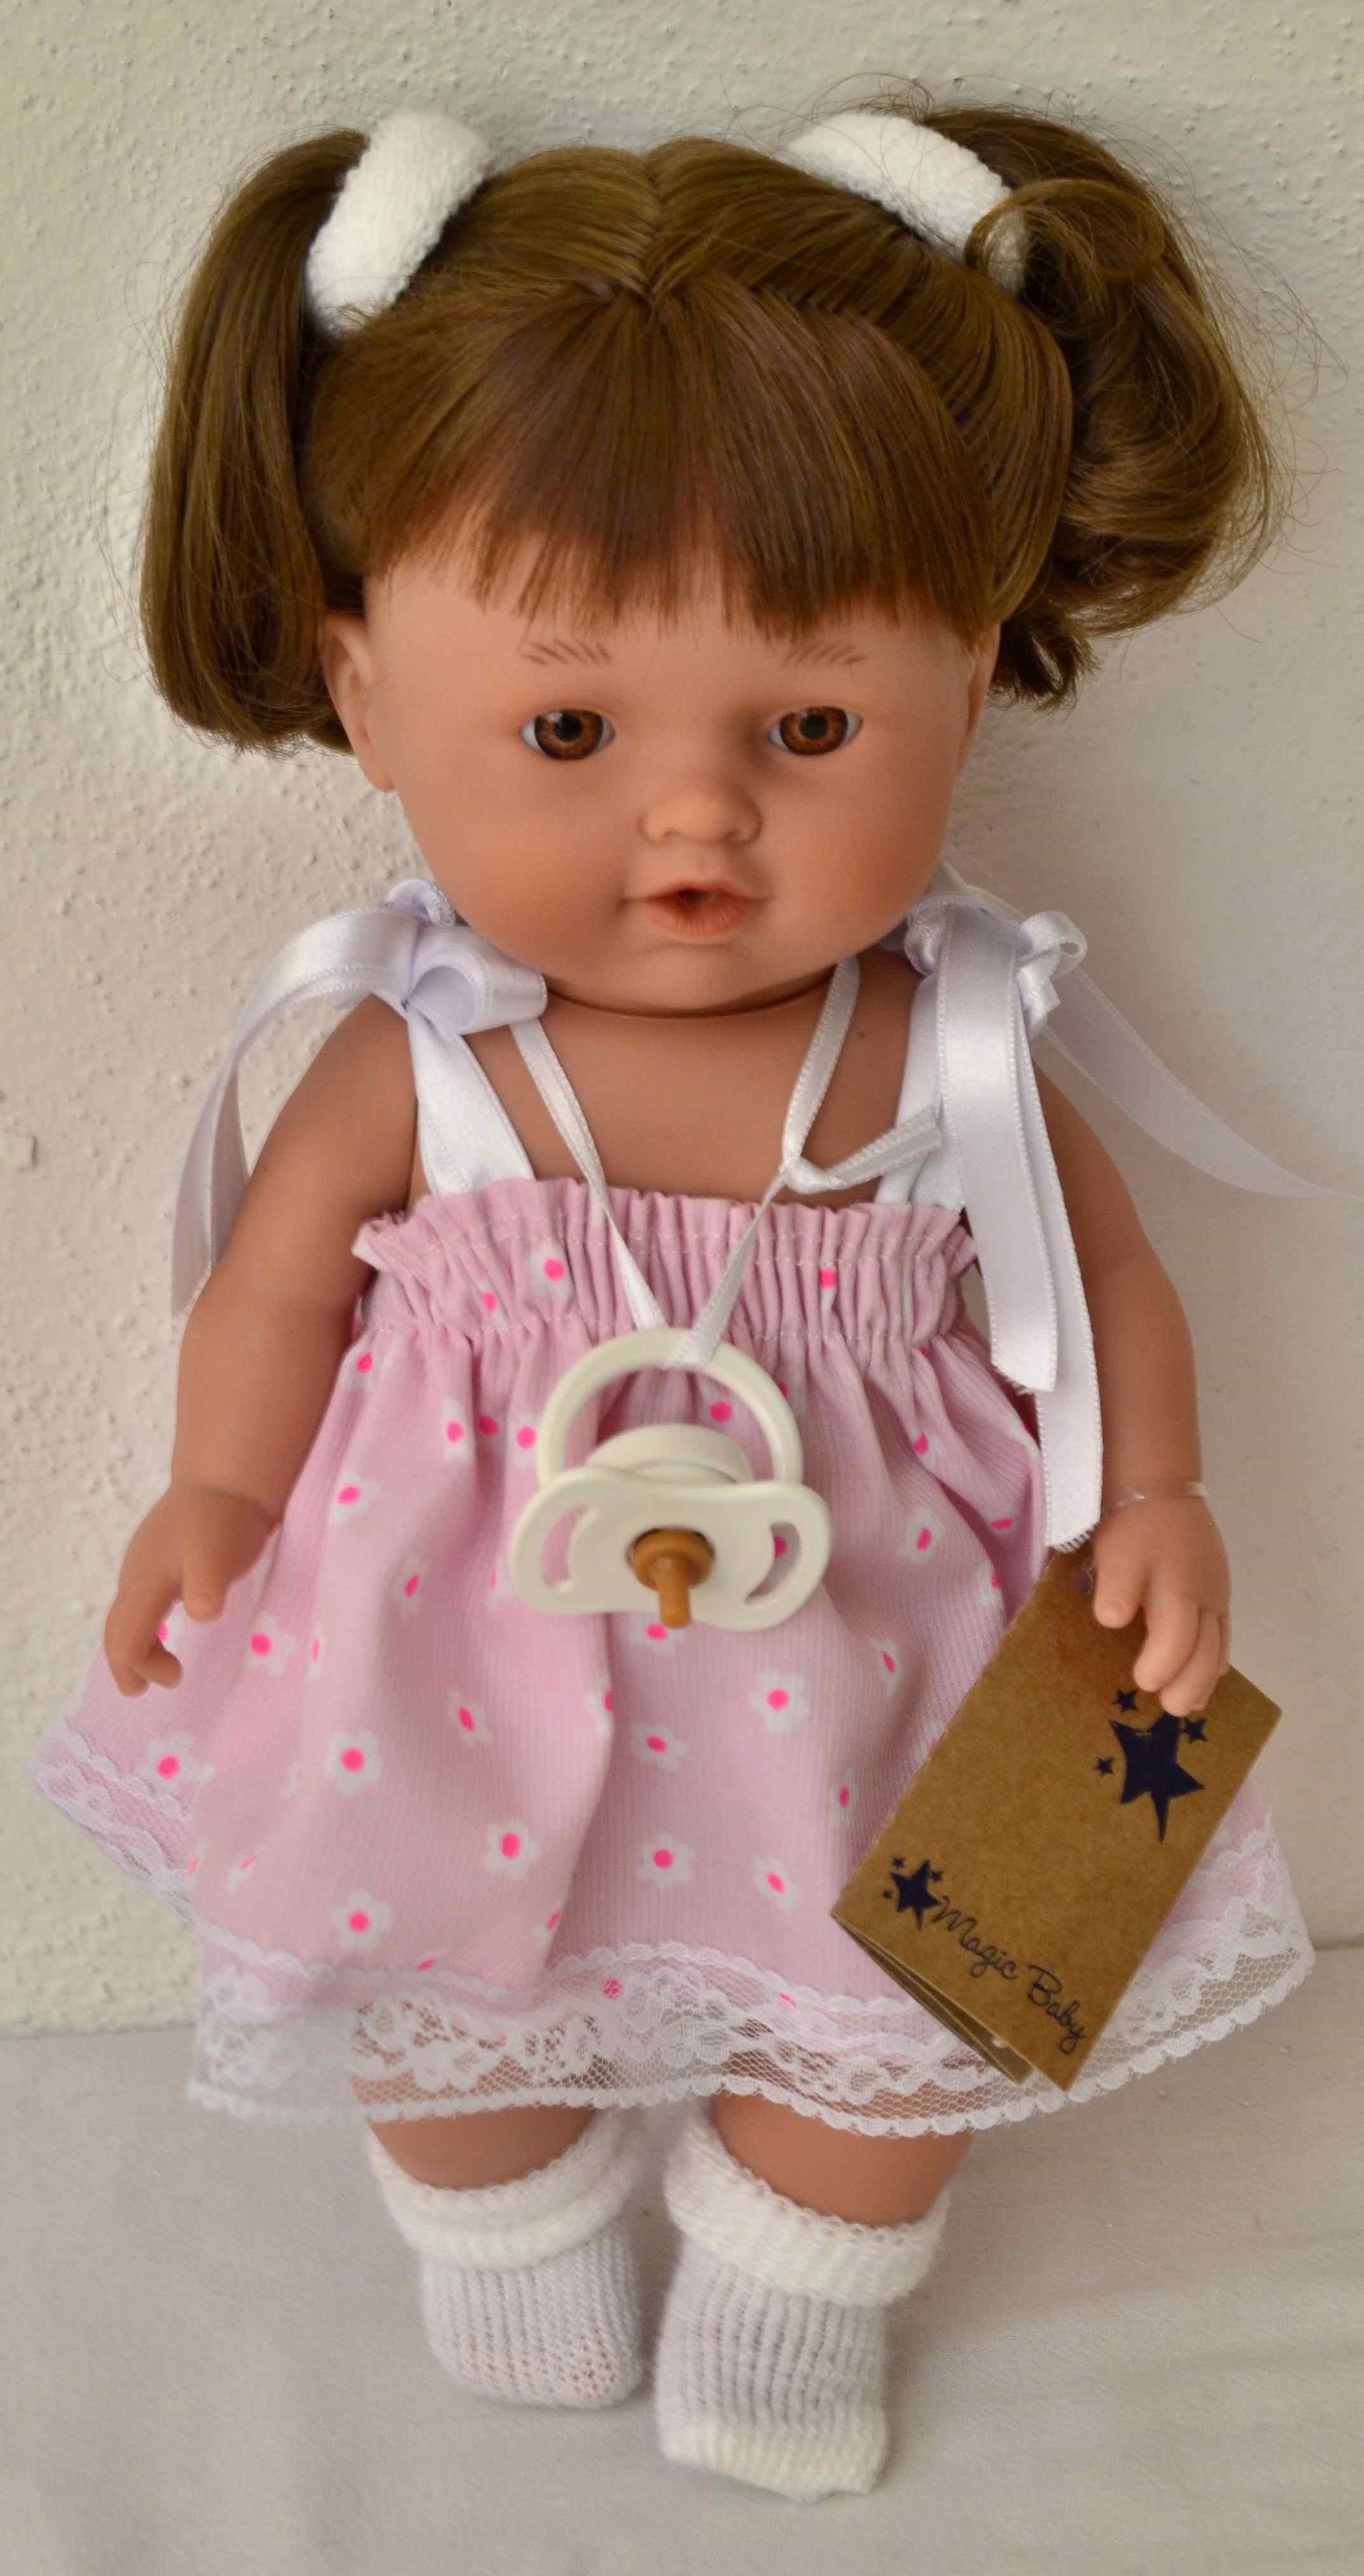 Realistická panenka Ester od firmy Lamagik ze Španělska